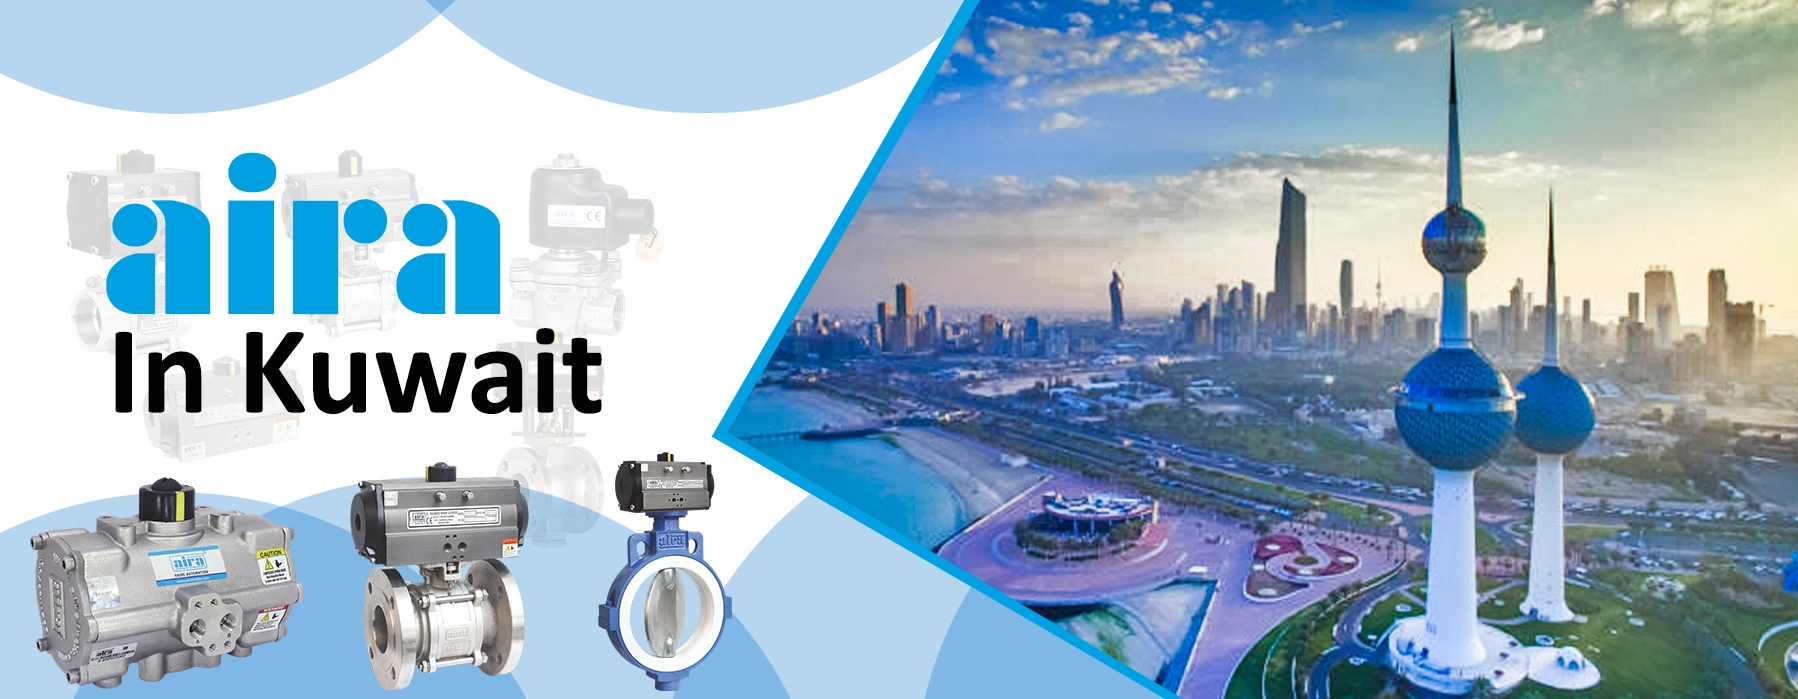 valve supplier in kuwait